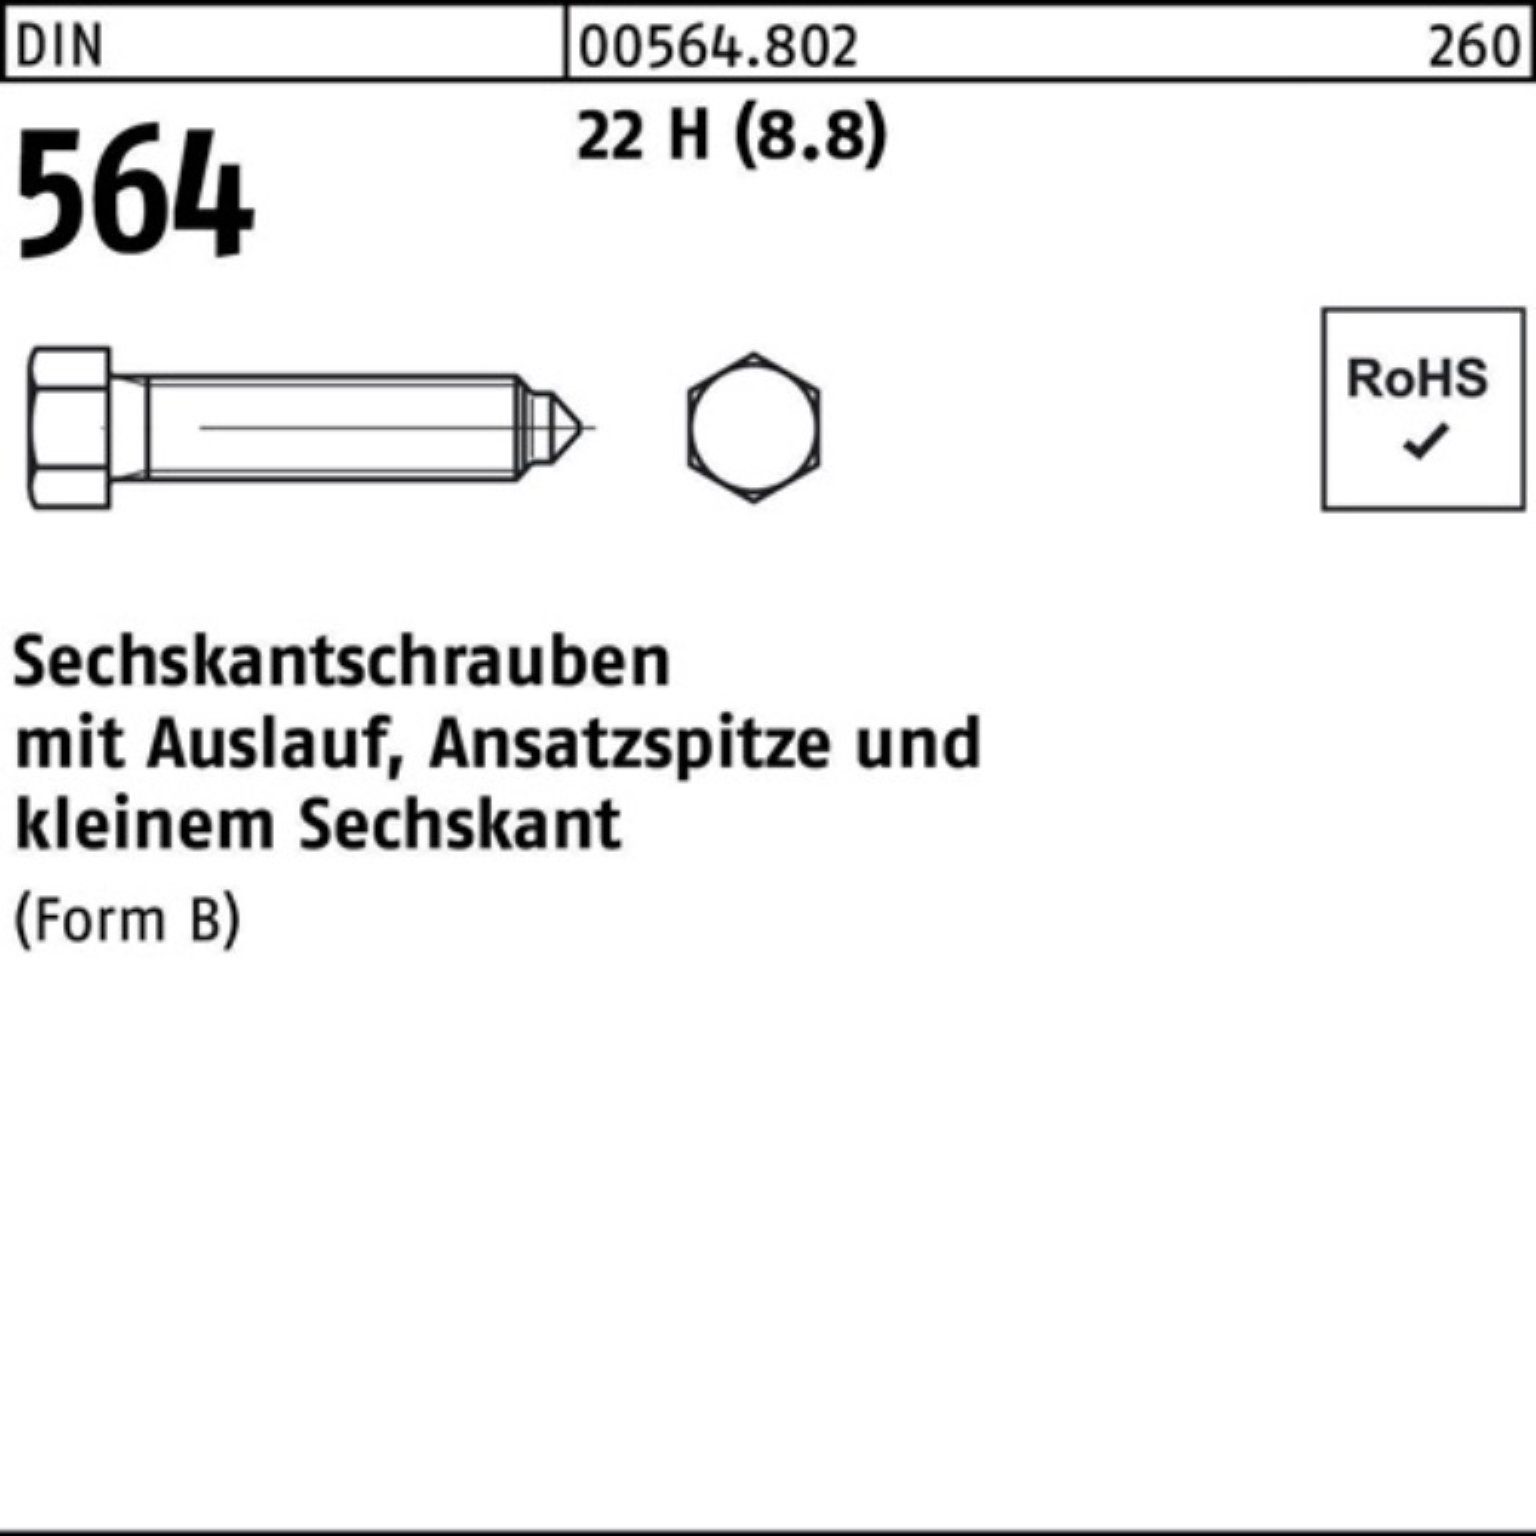 Reyher Sechskantschraube 100er Pack Sechskantschraube DIN 564 Ansatzspitze/Auslauf BM 10x 50 22